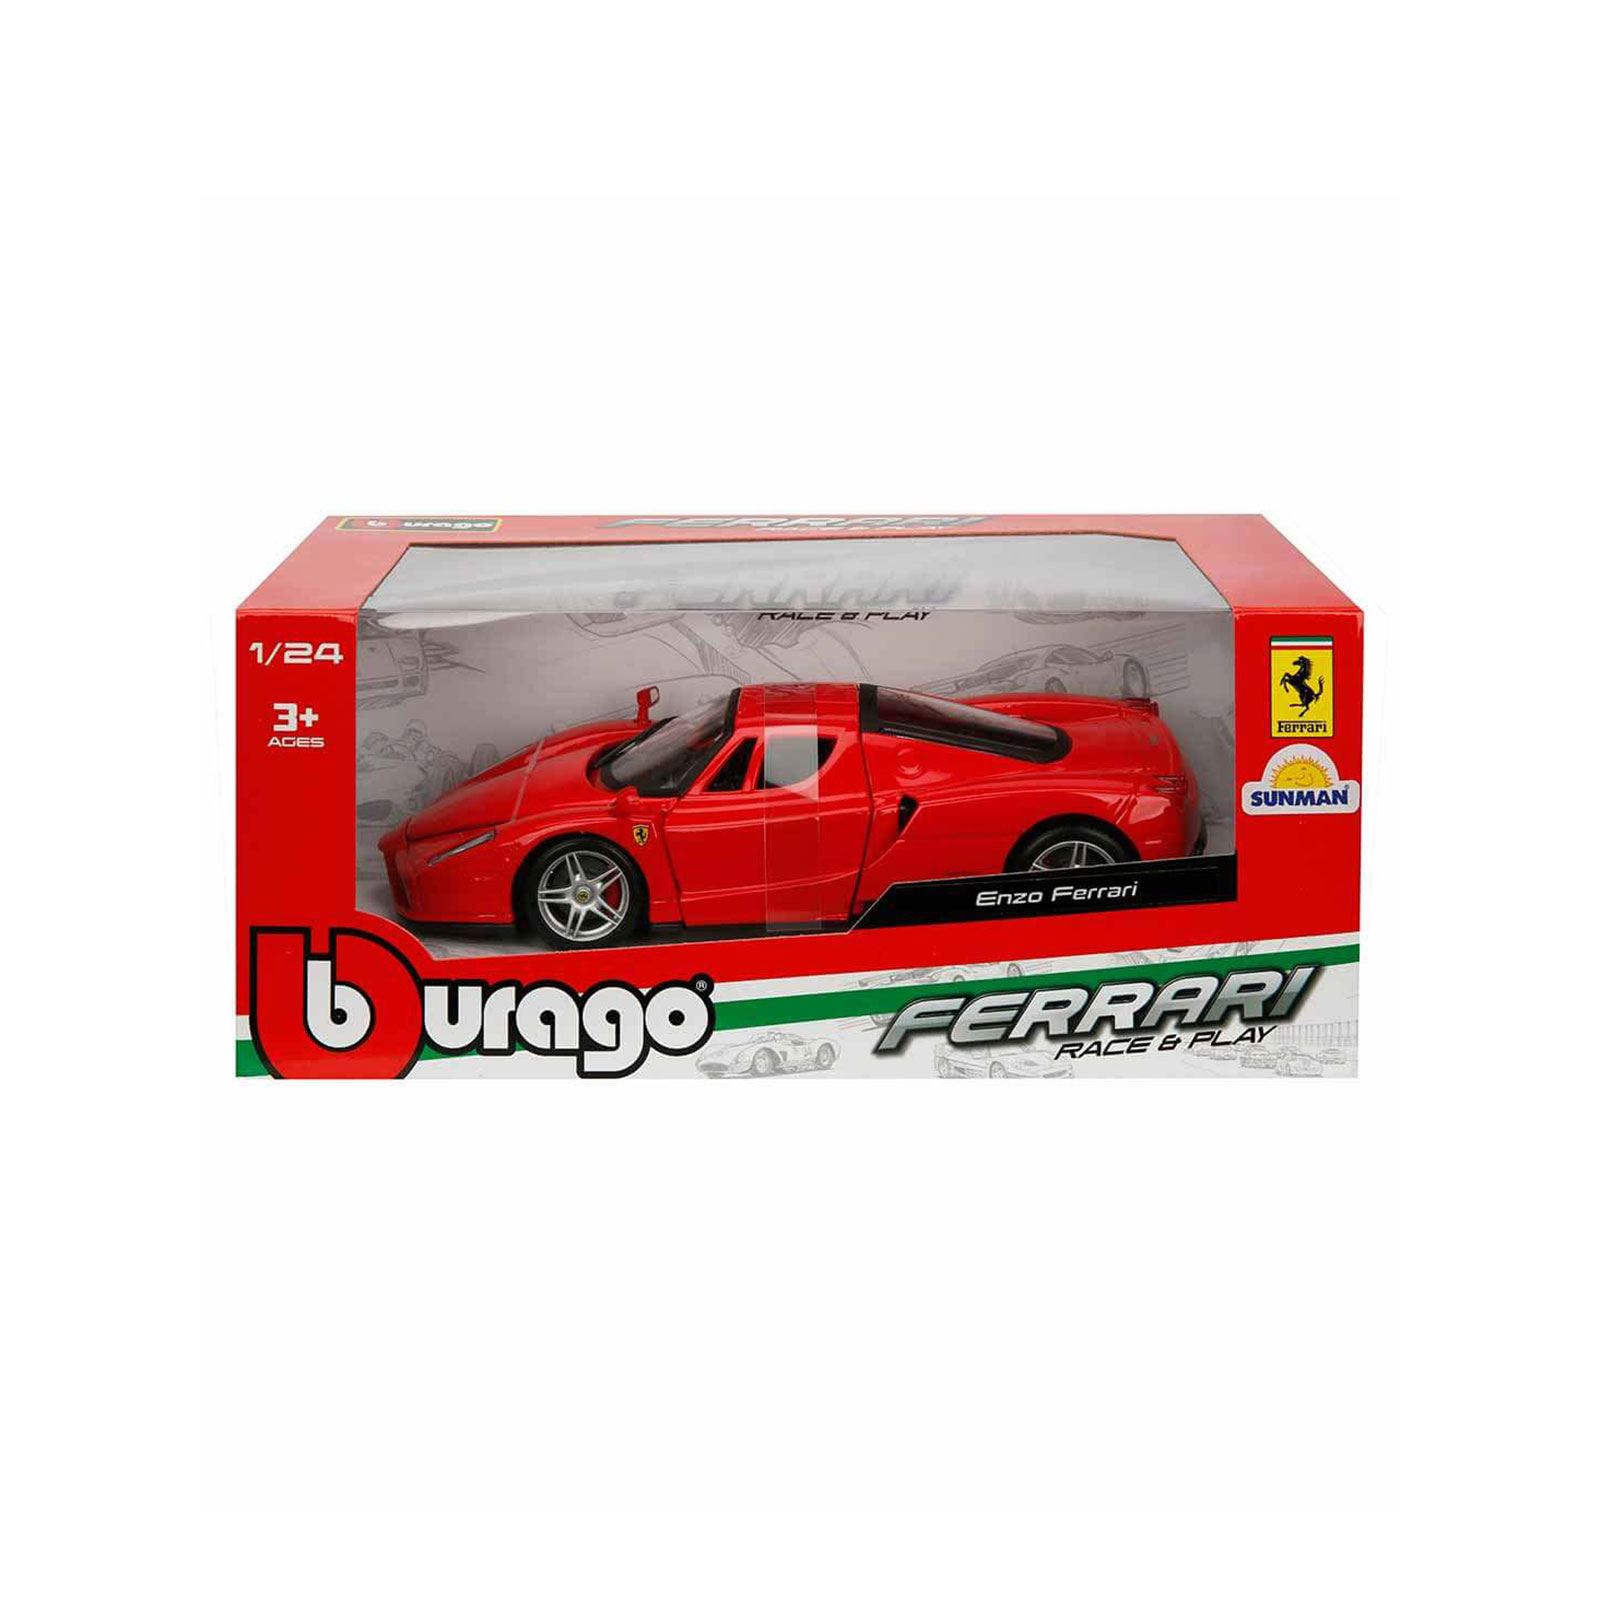 Sunman 1:24 Ferrari Enzo Araba Kırmızı